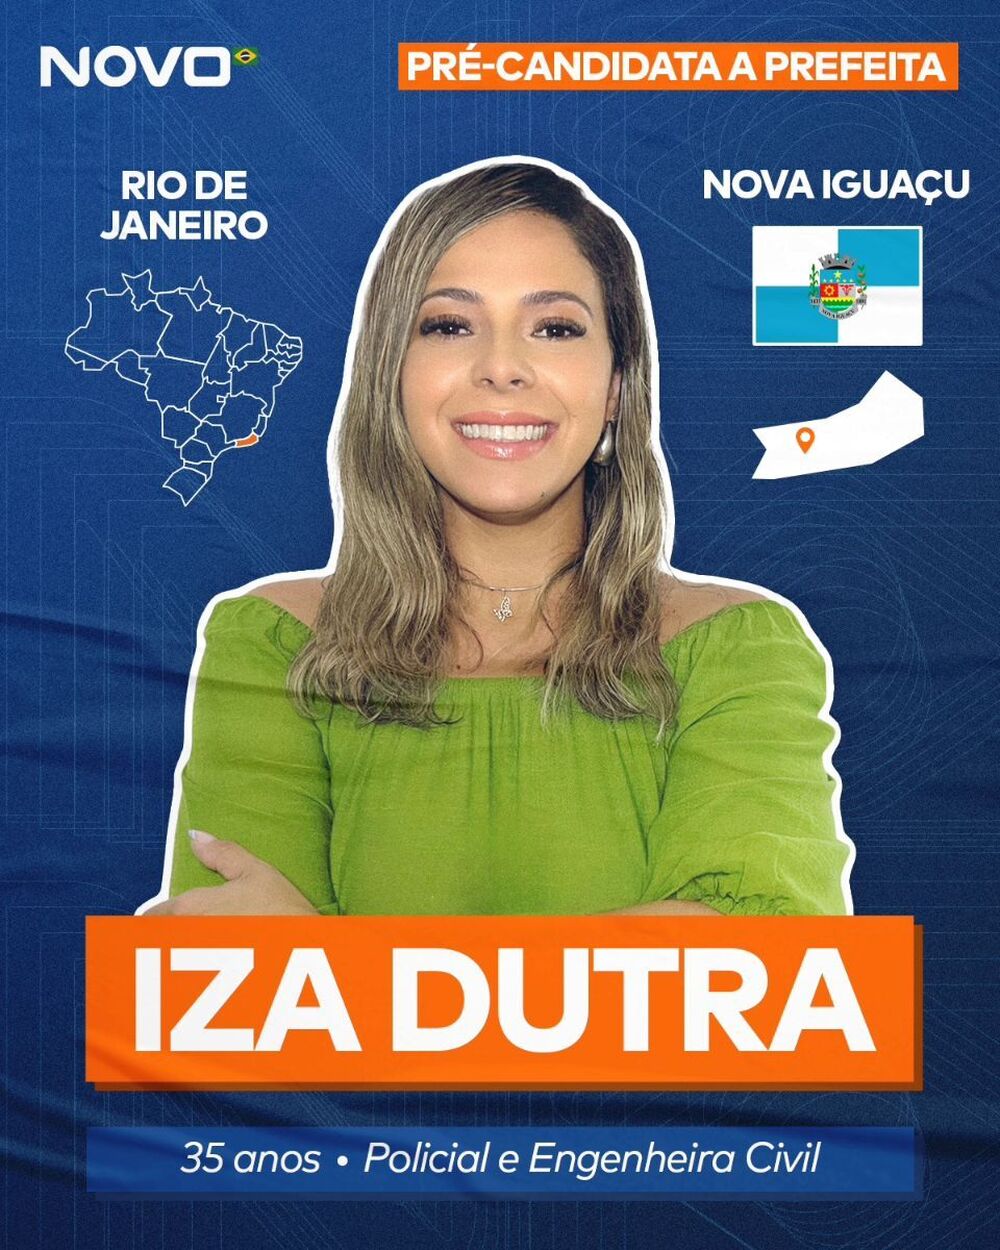 Renovação e Compromisso: Iza Dutra e suas Propostas para Transformar Nova Iguaçu 